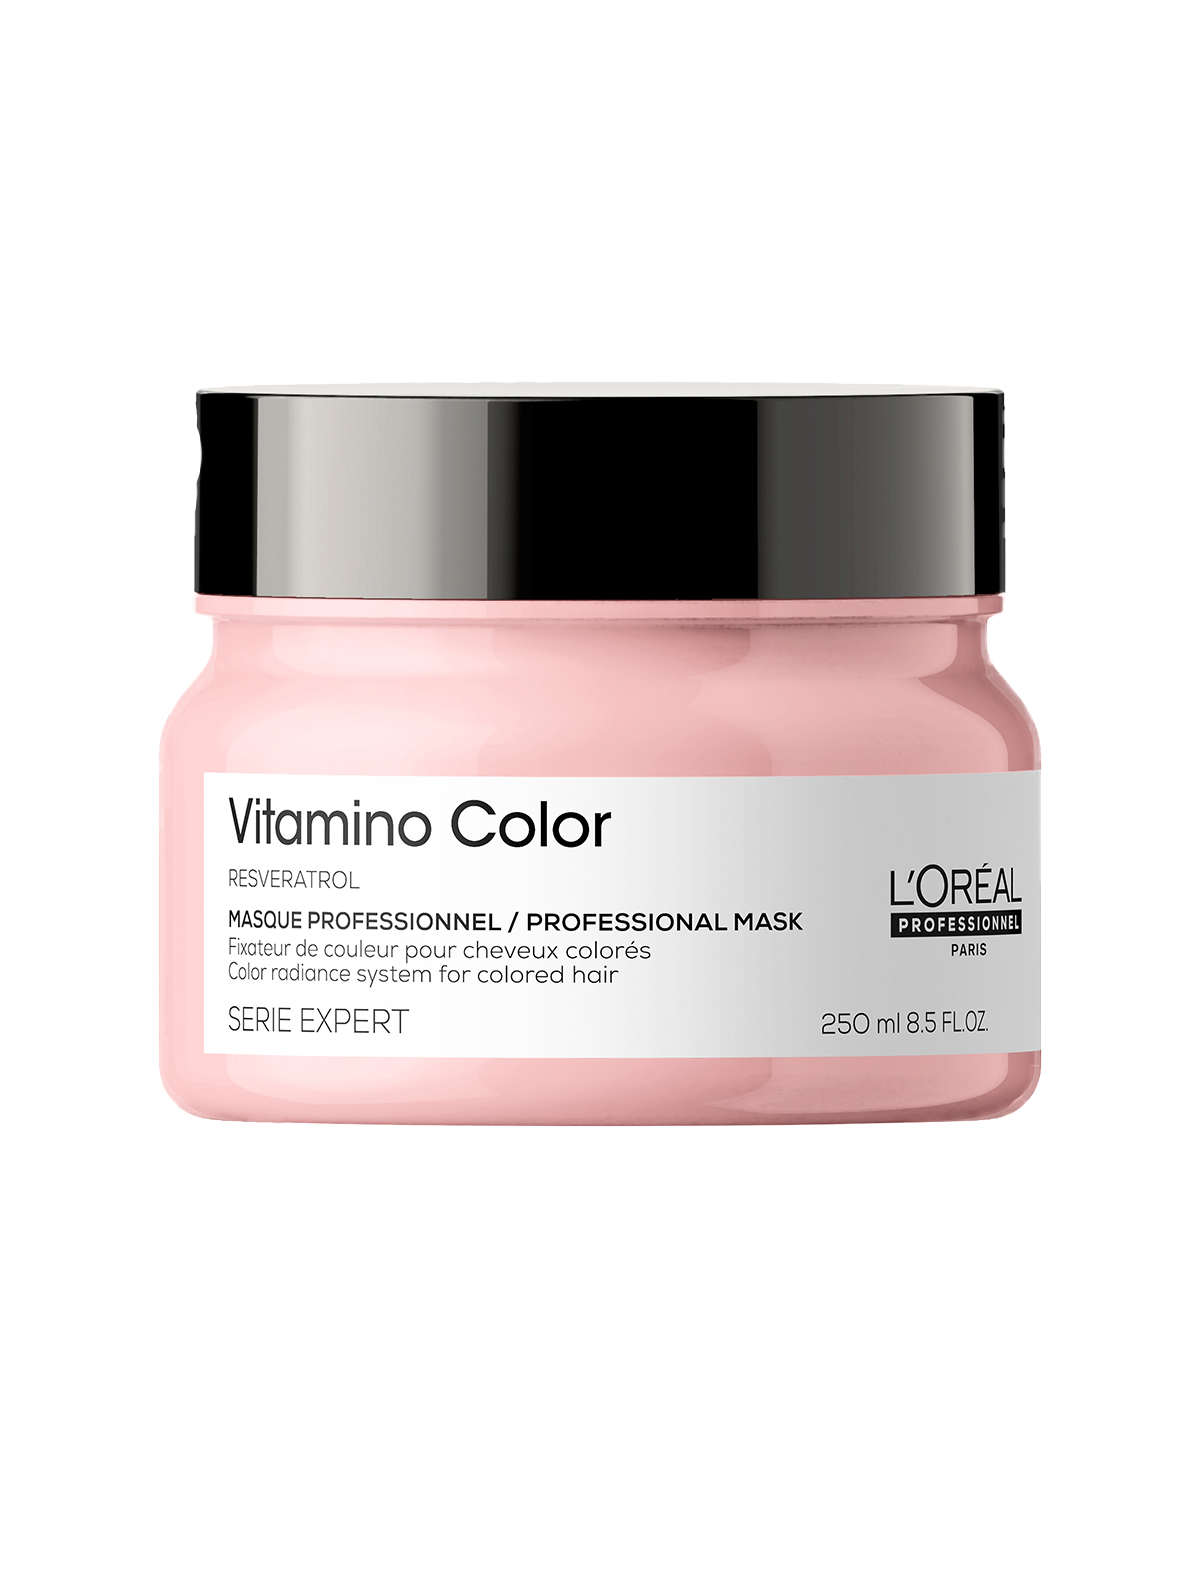 L'Oreal Vitamino Color Masque 250ml